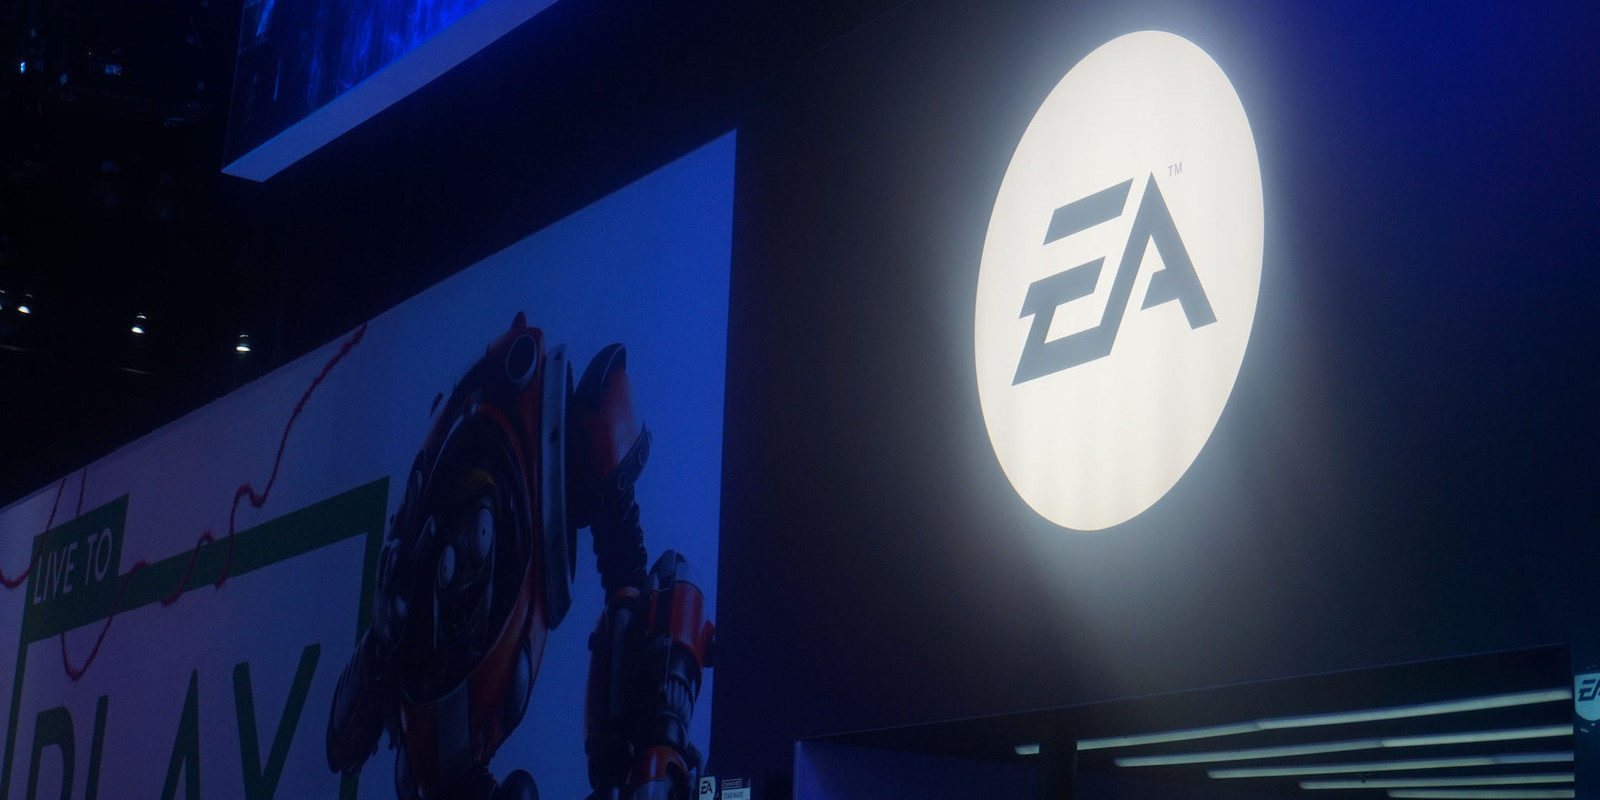 E3 2016 DIRECTO: Conferencia EA a partir de las 22:00